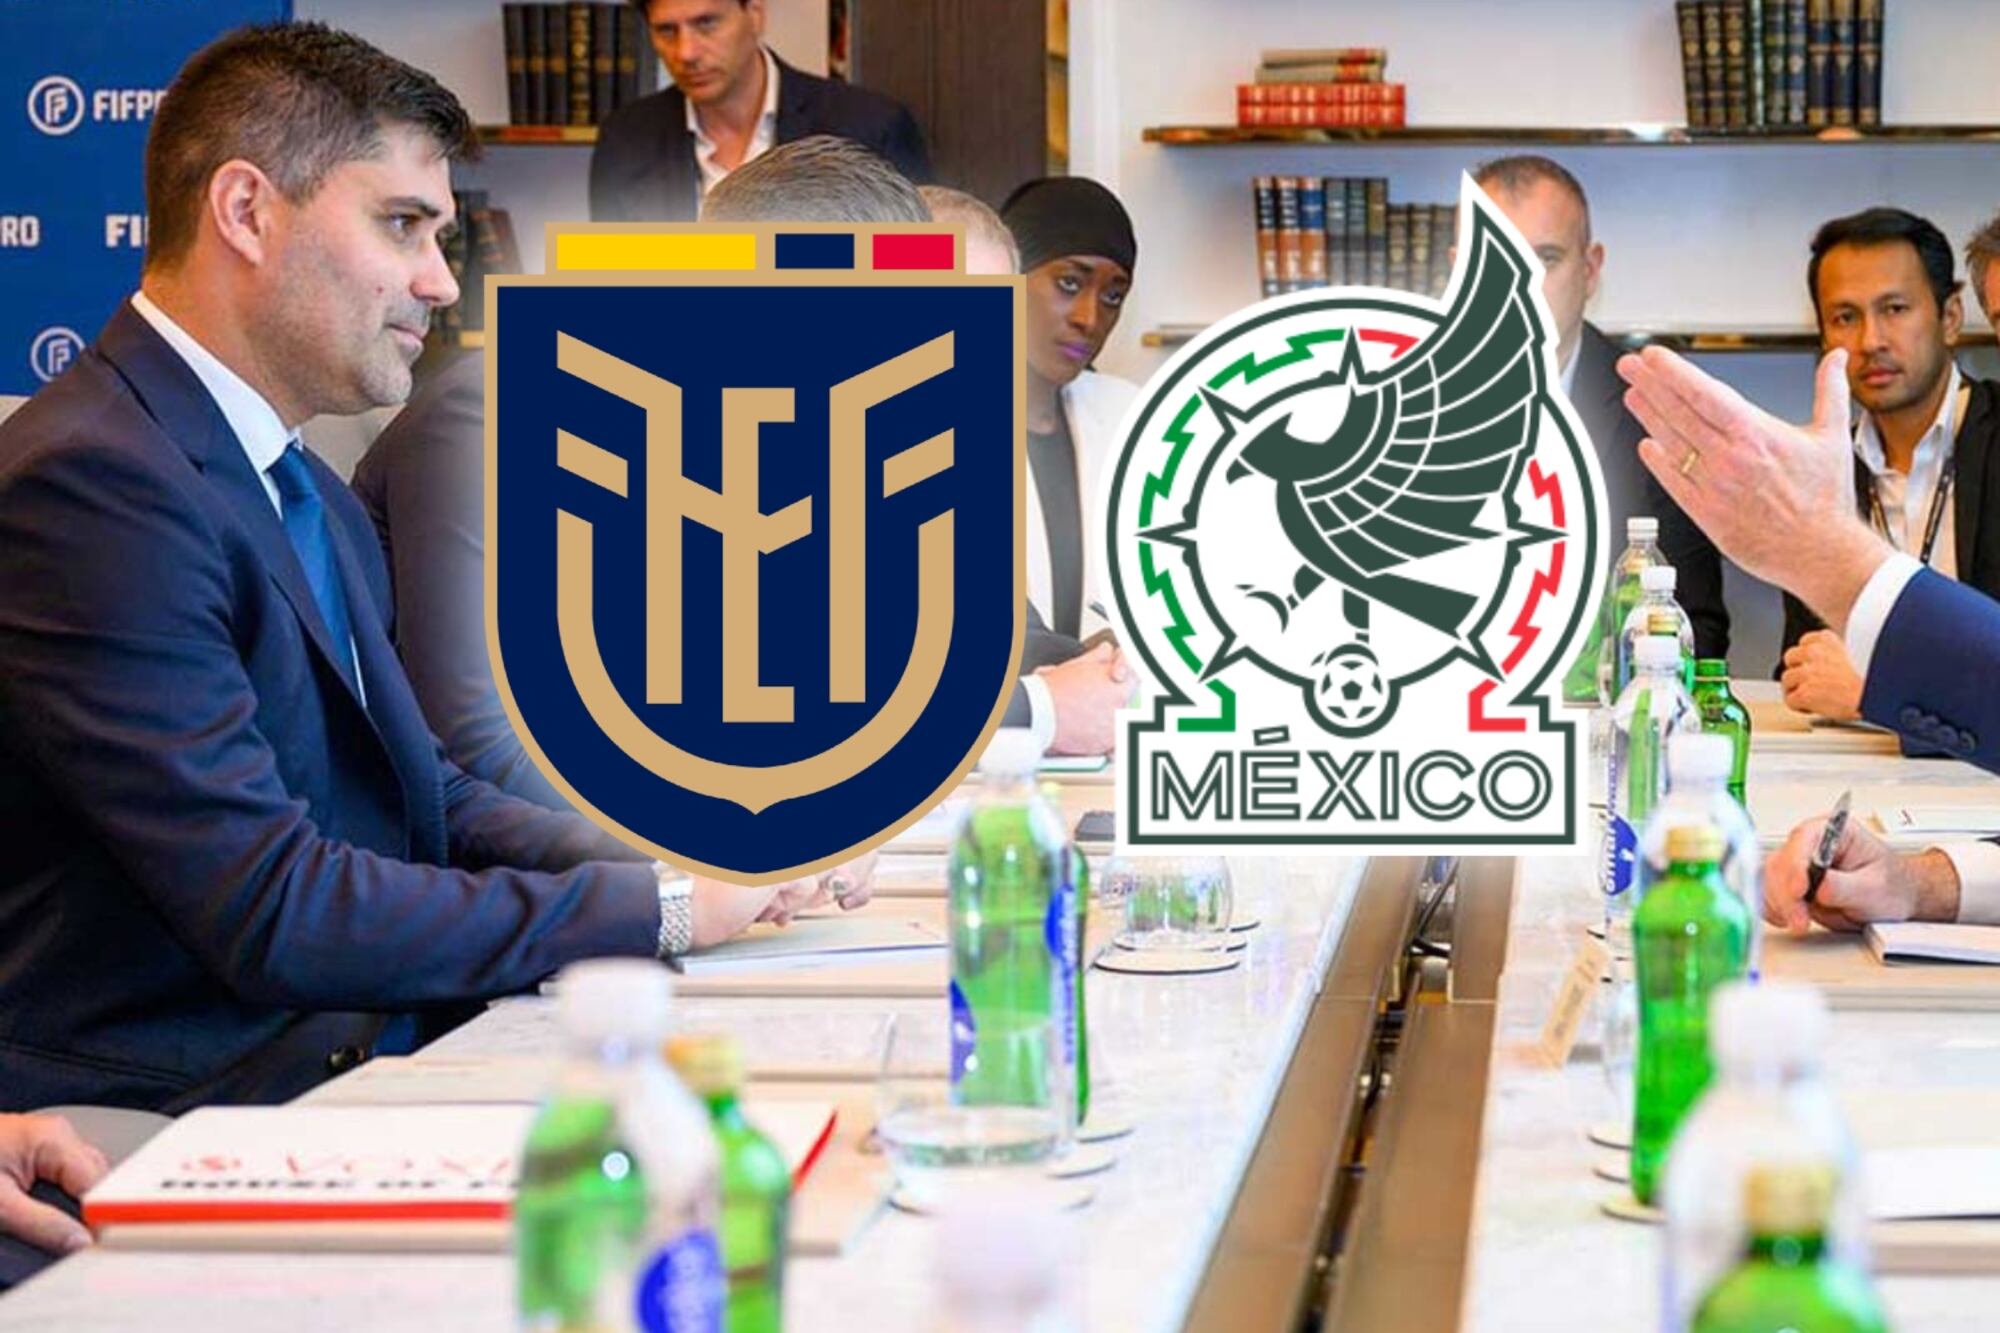 Comparten grupo en Copa América y lo que pasaría con el Ecuador vs. México tras la invasión a la embajada mexicana